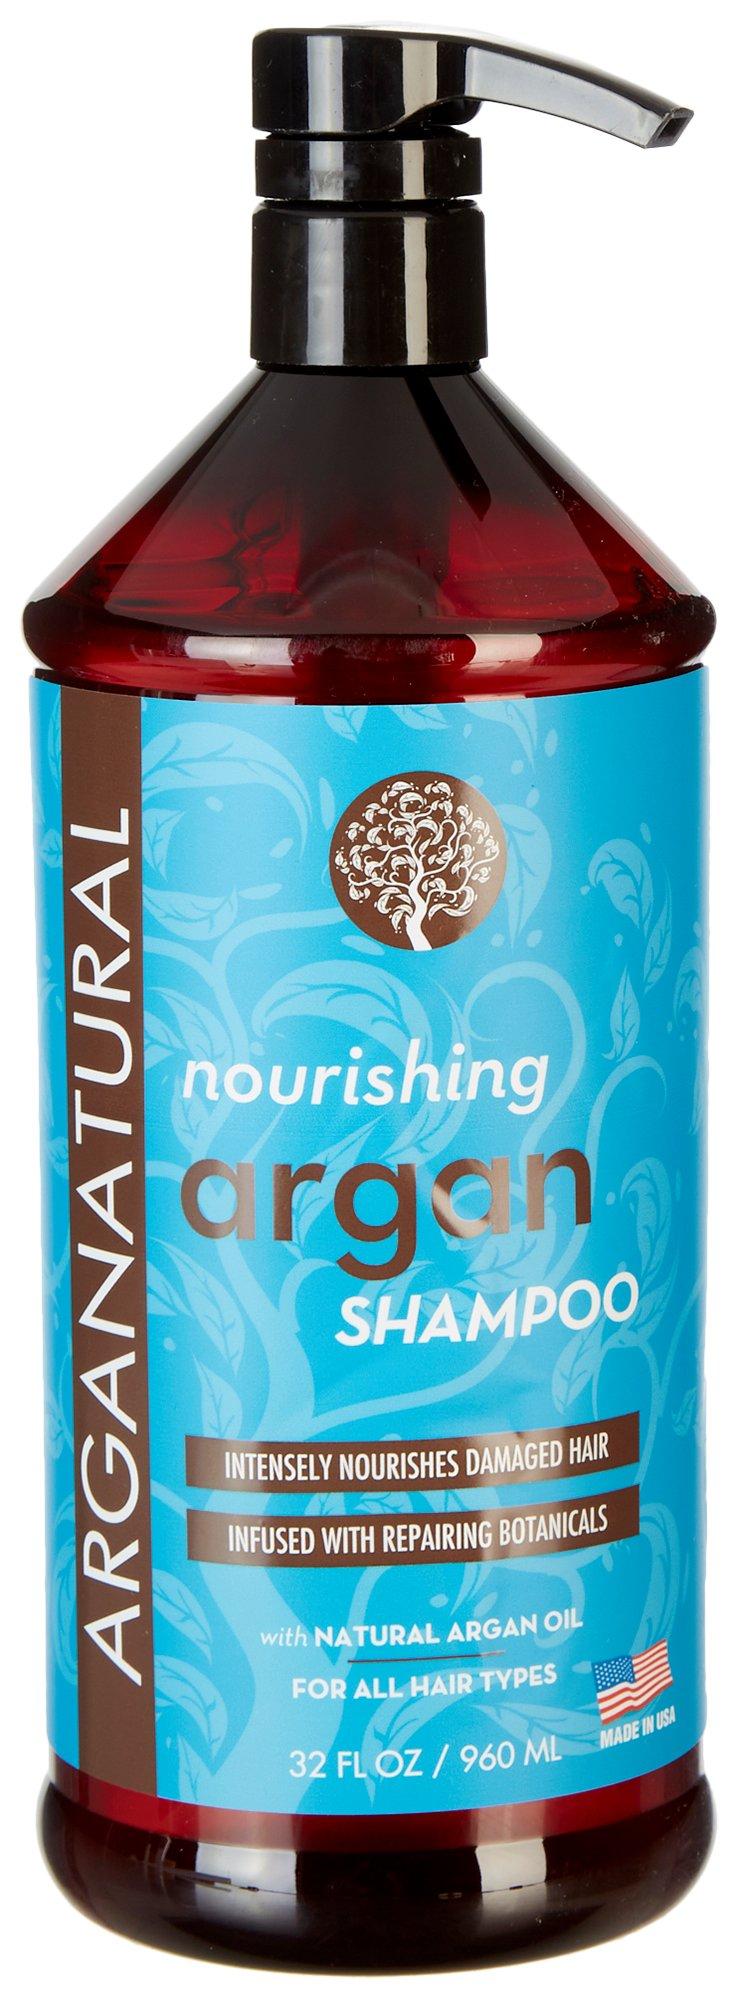 Arganatural Nourishing Argan Shampoo 32 fl. oz.